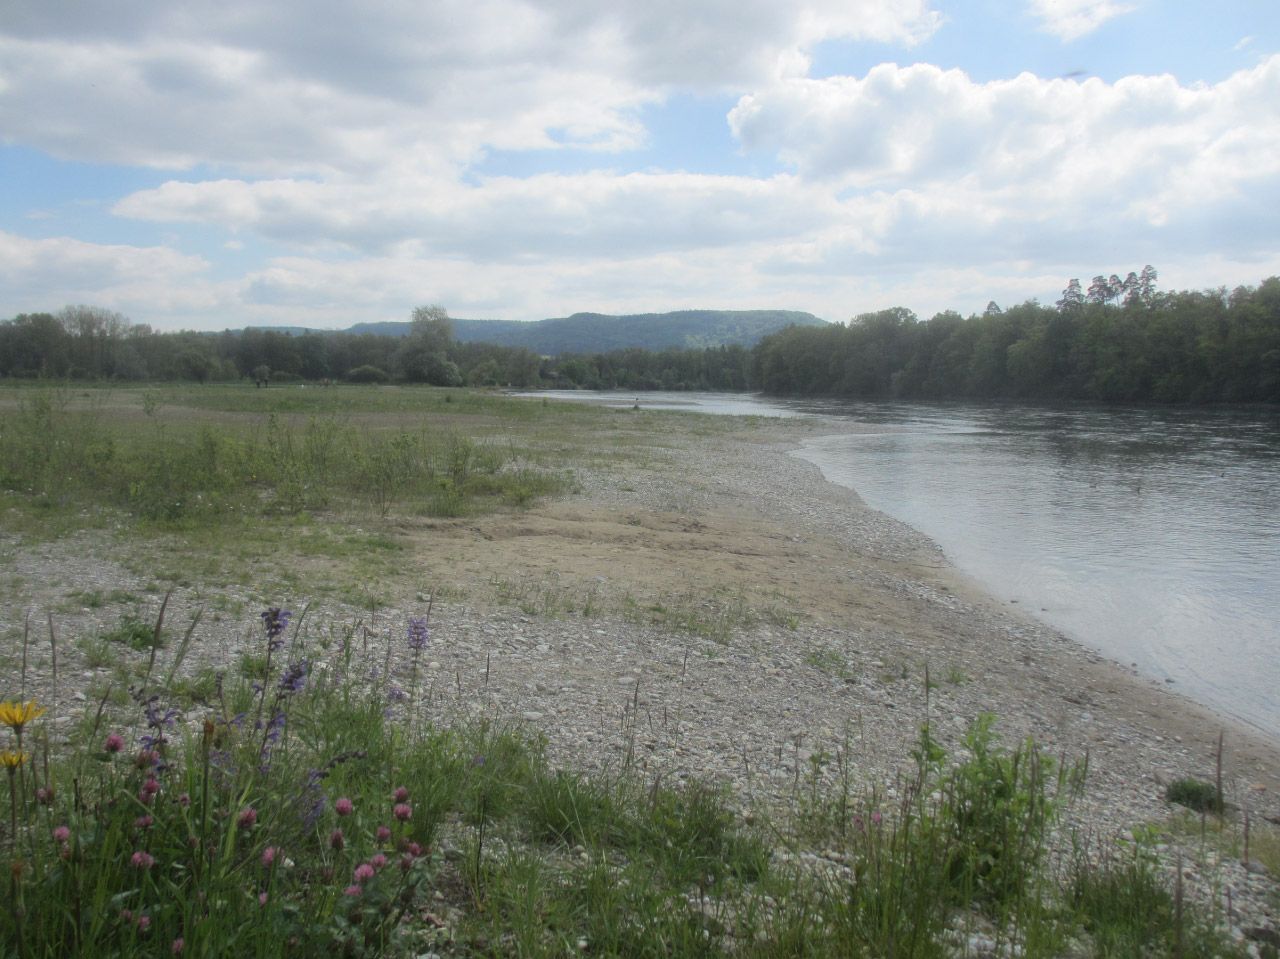 Die Thur mit einem bewachsenen, flachen Ufer im Vordergrund. Im Hintergrund ist Wald.